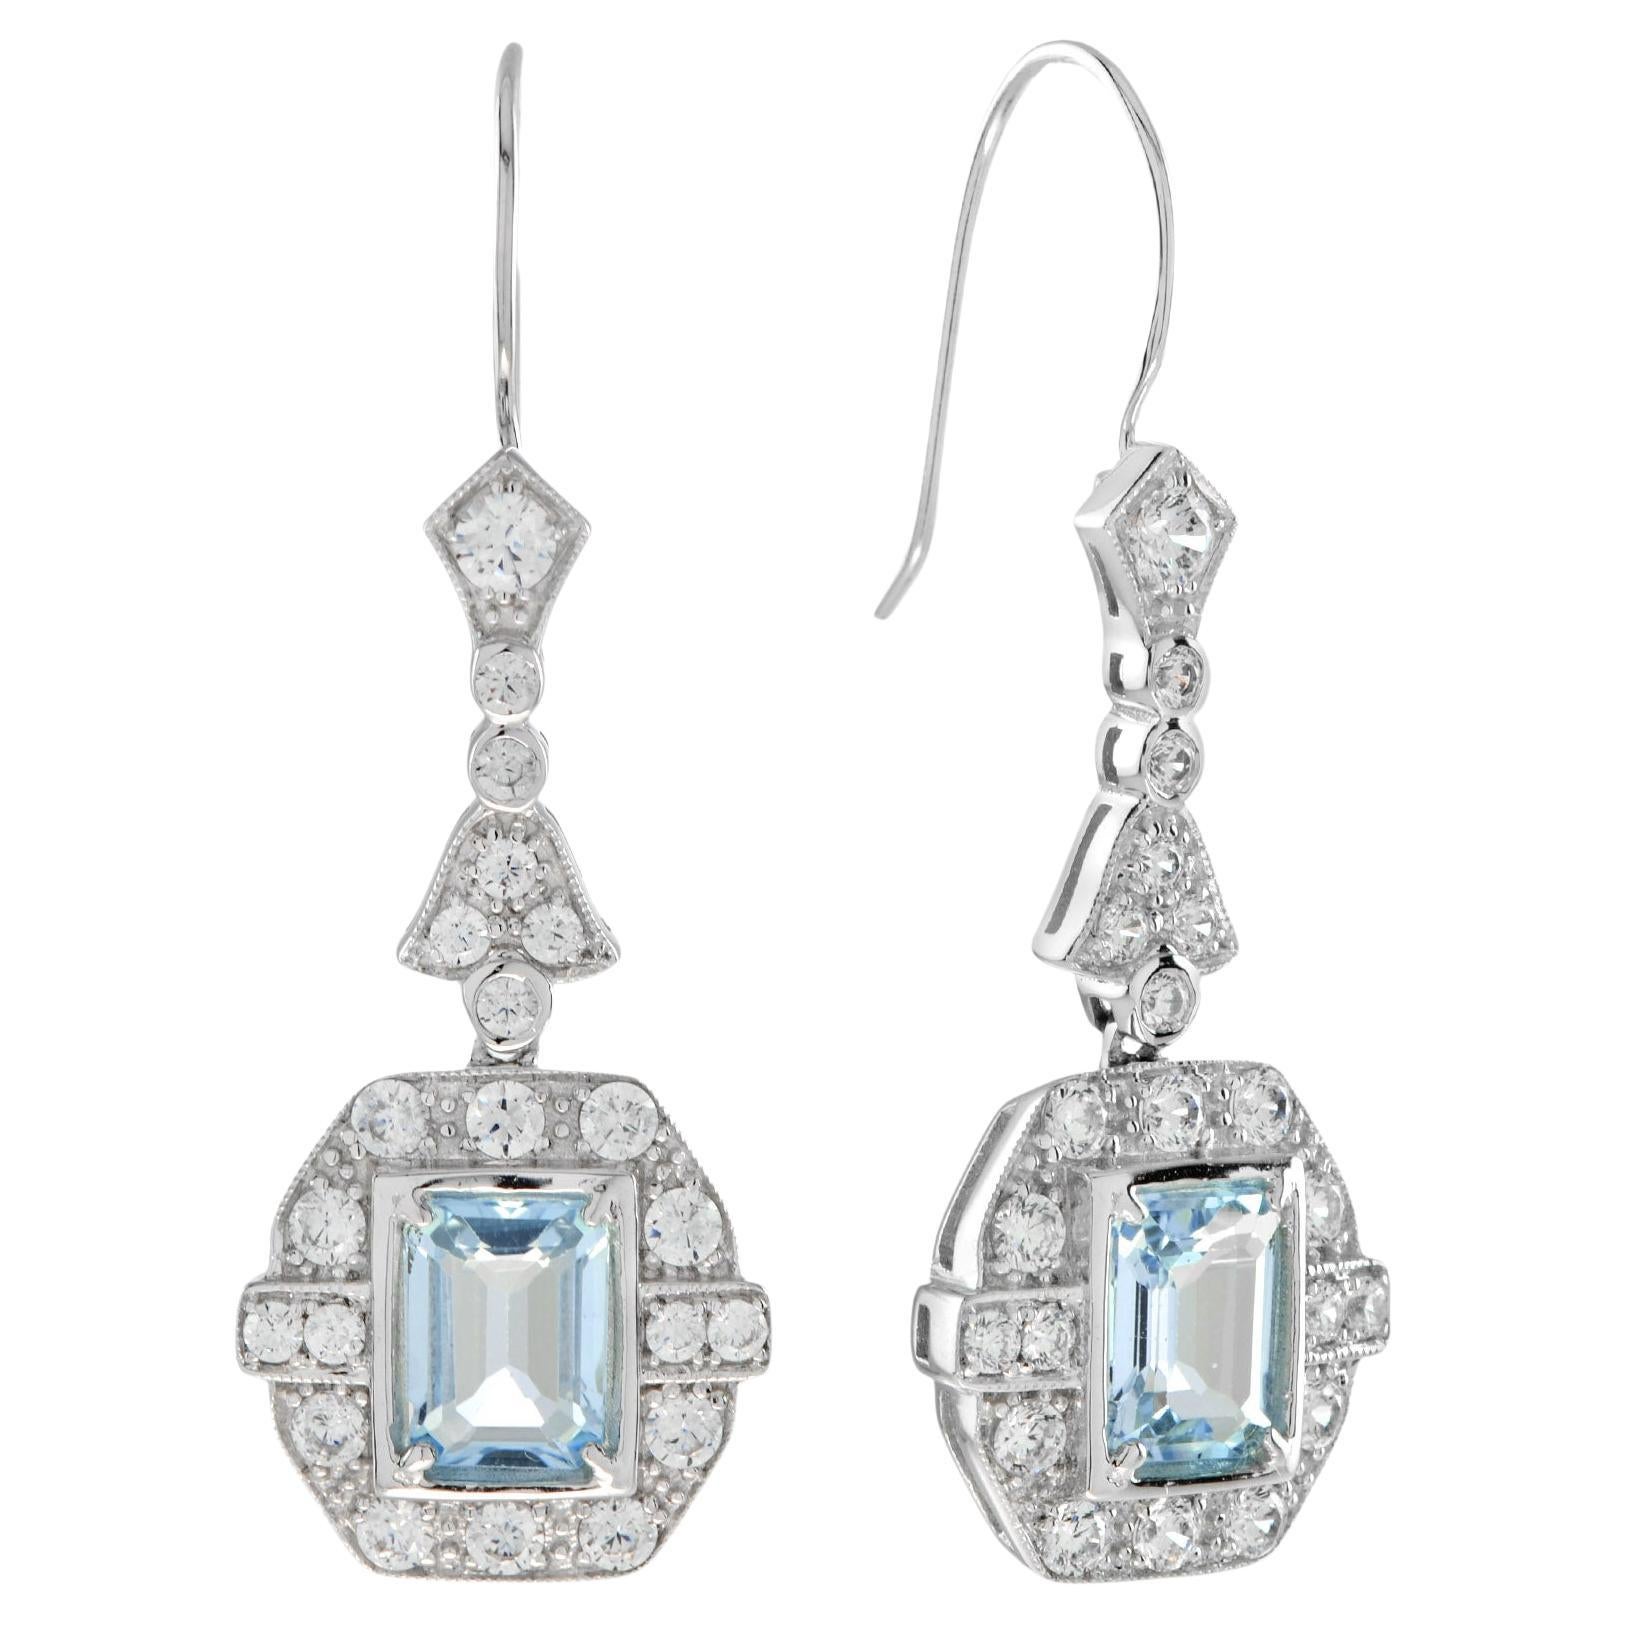 Emerald Cut Blue Topaz with Diamond Drop Earrings in 14K White Gold